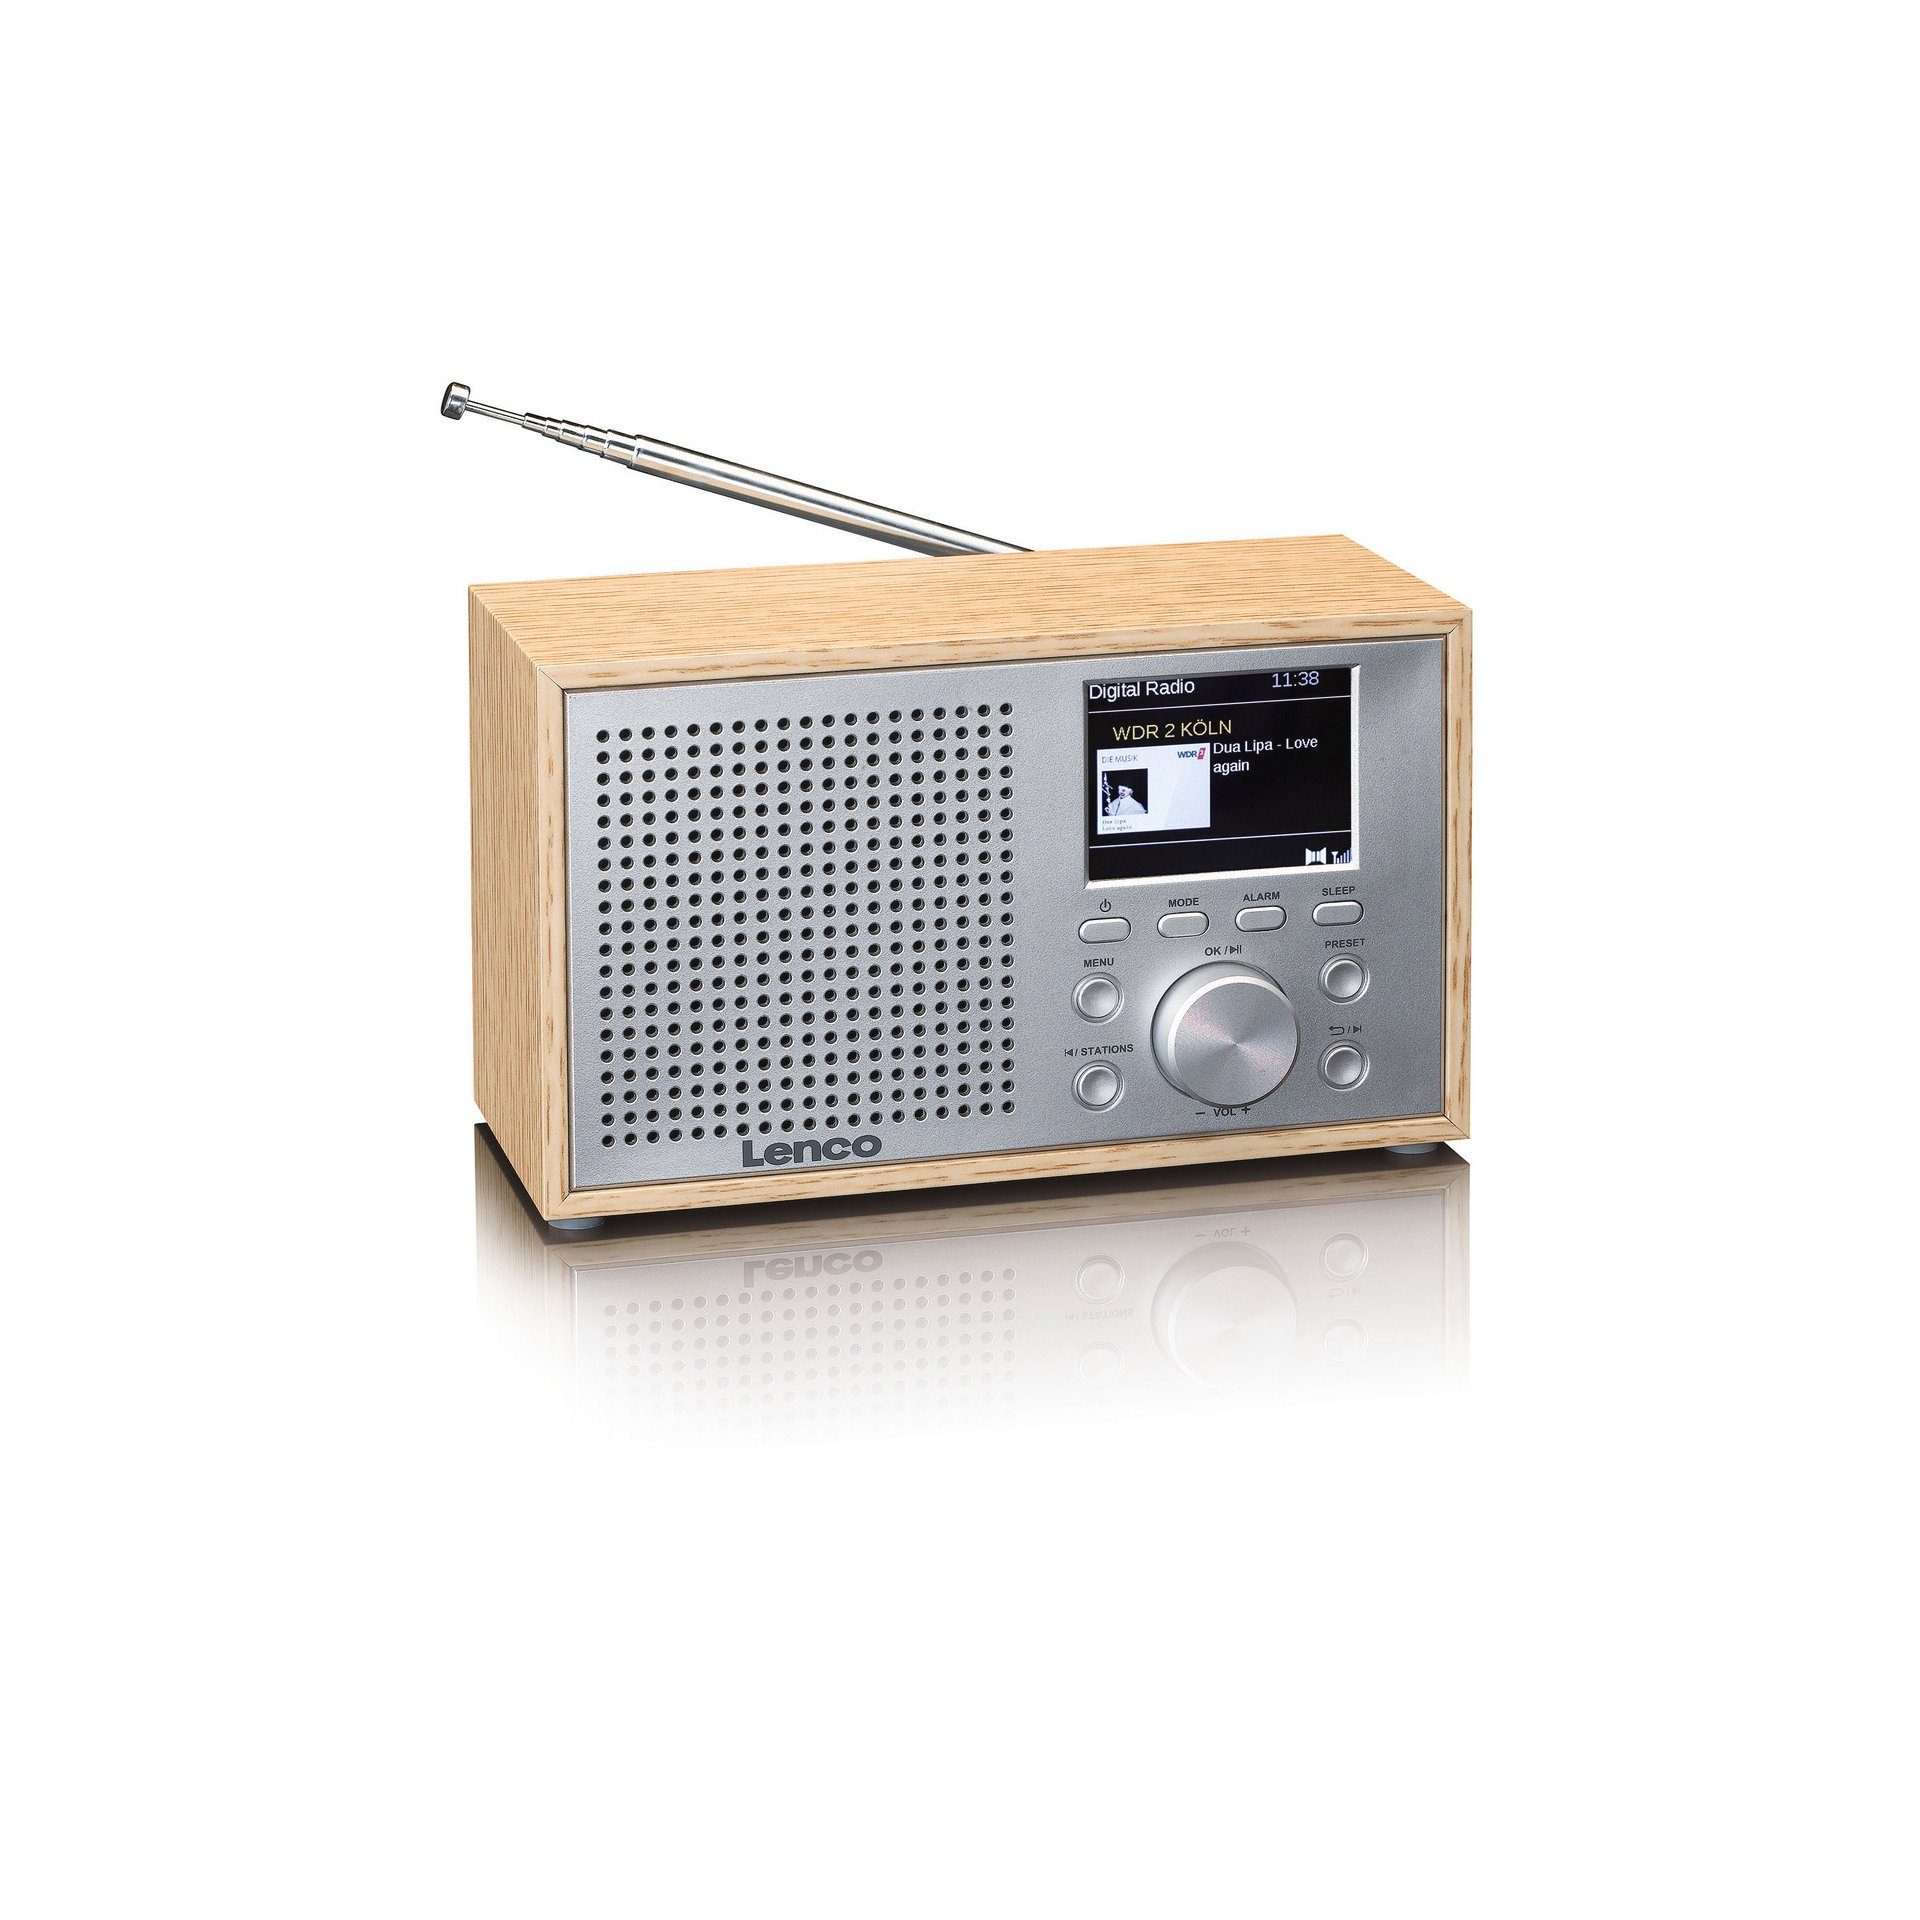 Lenco von DAB+/FM Digitalradio 3 (DAB), (RMS) mit Radio 3 (DAB) Watt Lautsprecher einer DAR-017 mit Integrierter Bluetooth Leistung W), (Digitalradio